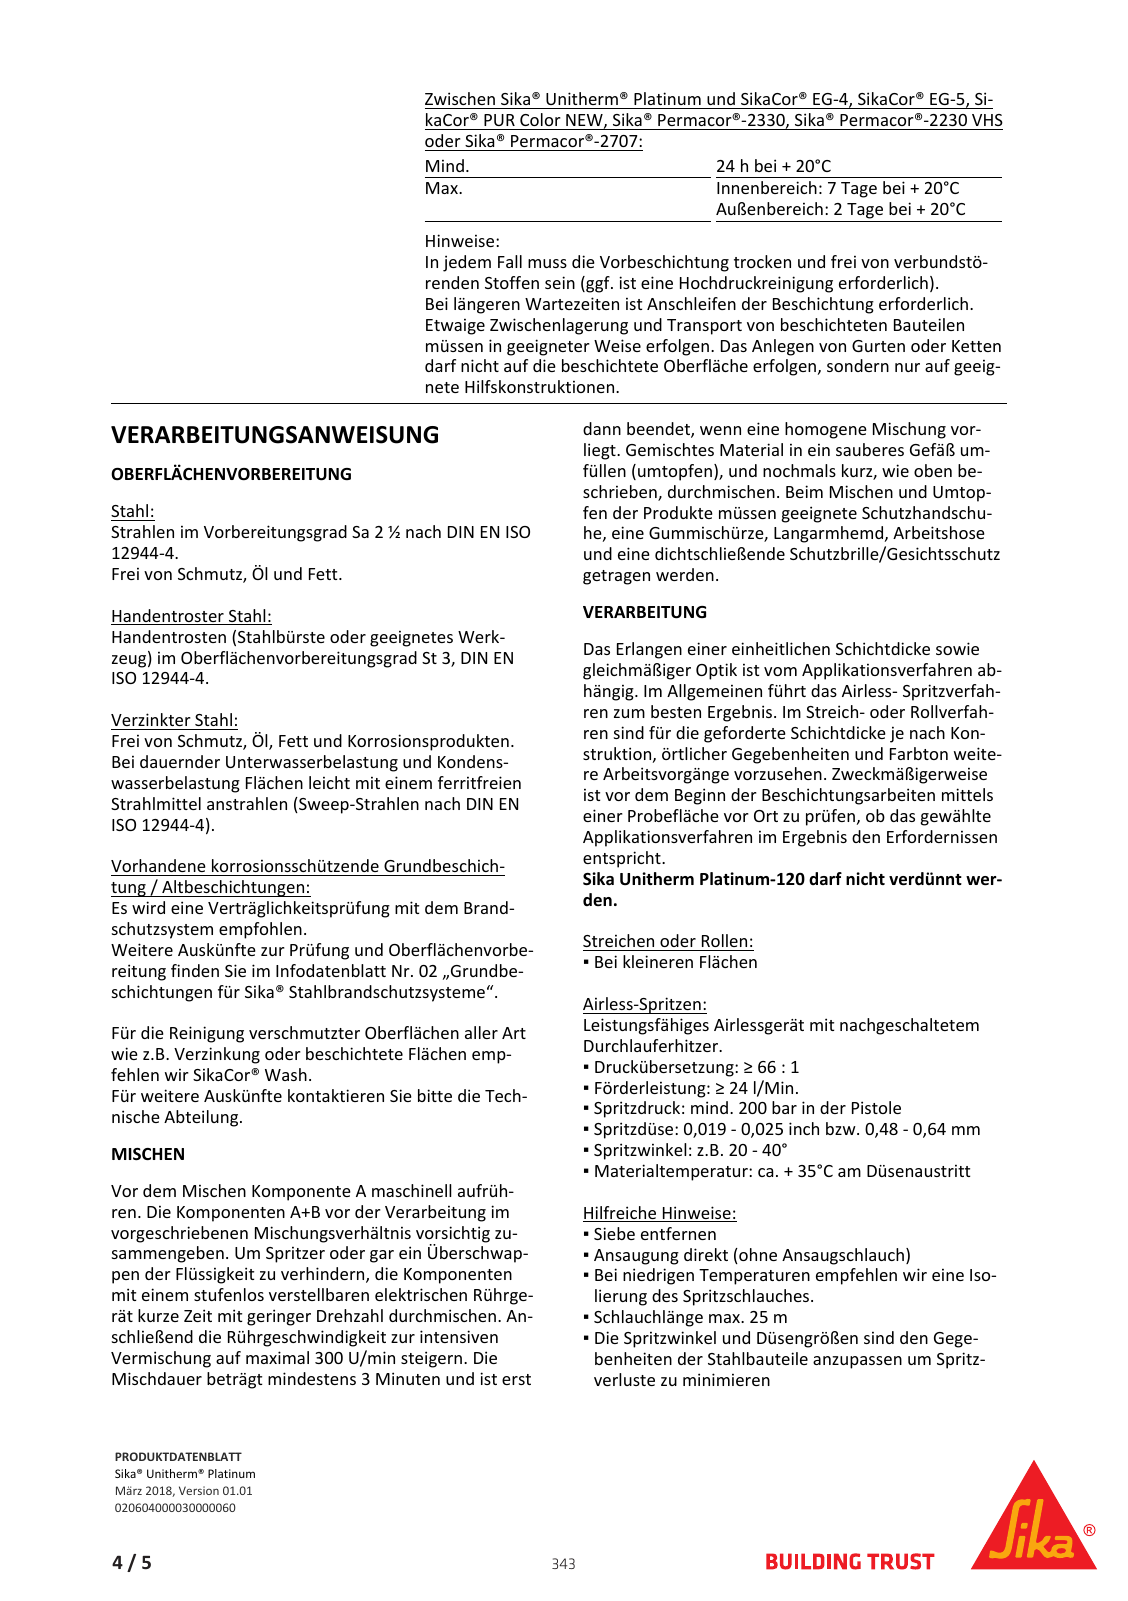 Vorschau Sika_Korrosionsschutz_und_Brandschutz_Band1 Seite 343